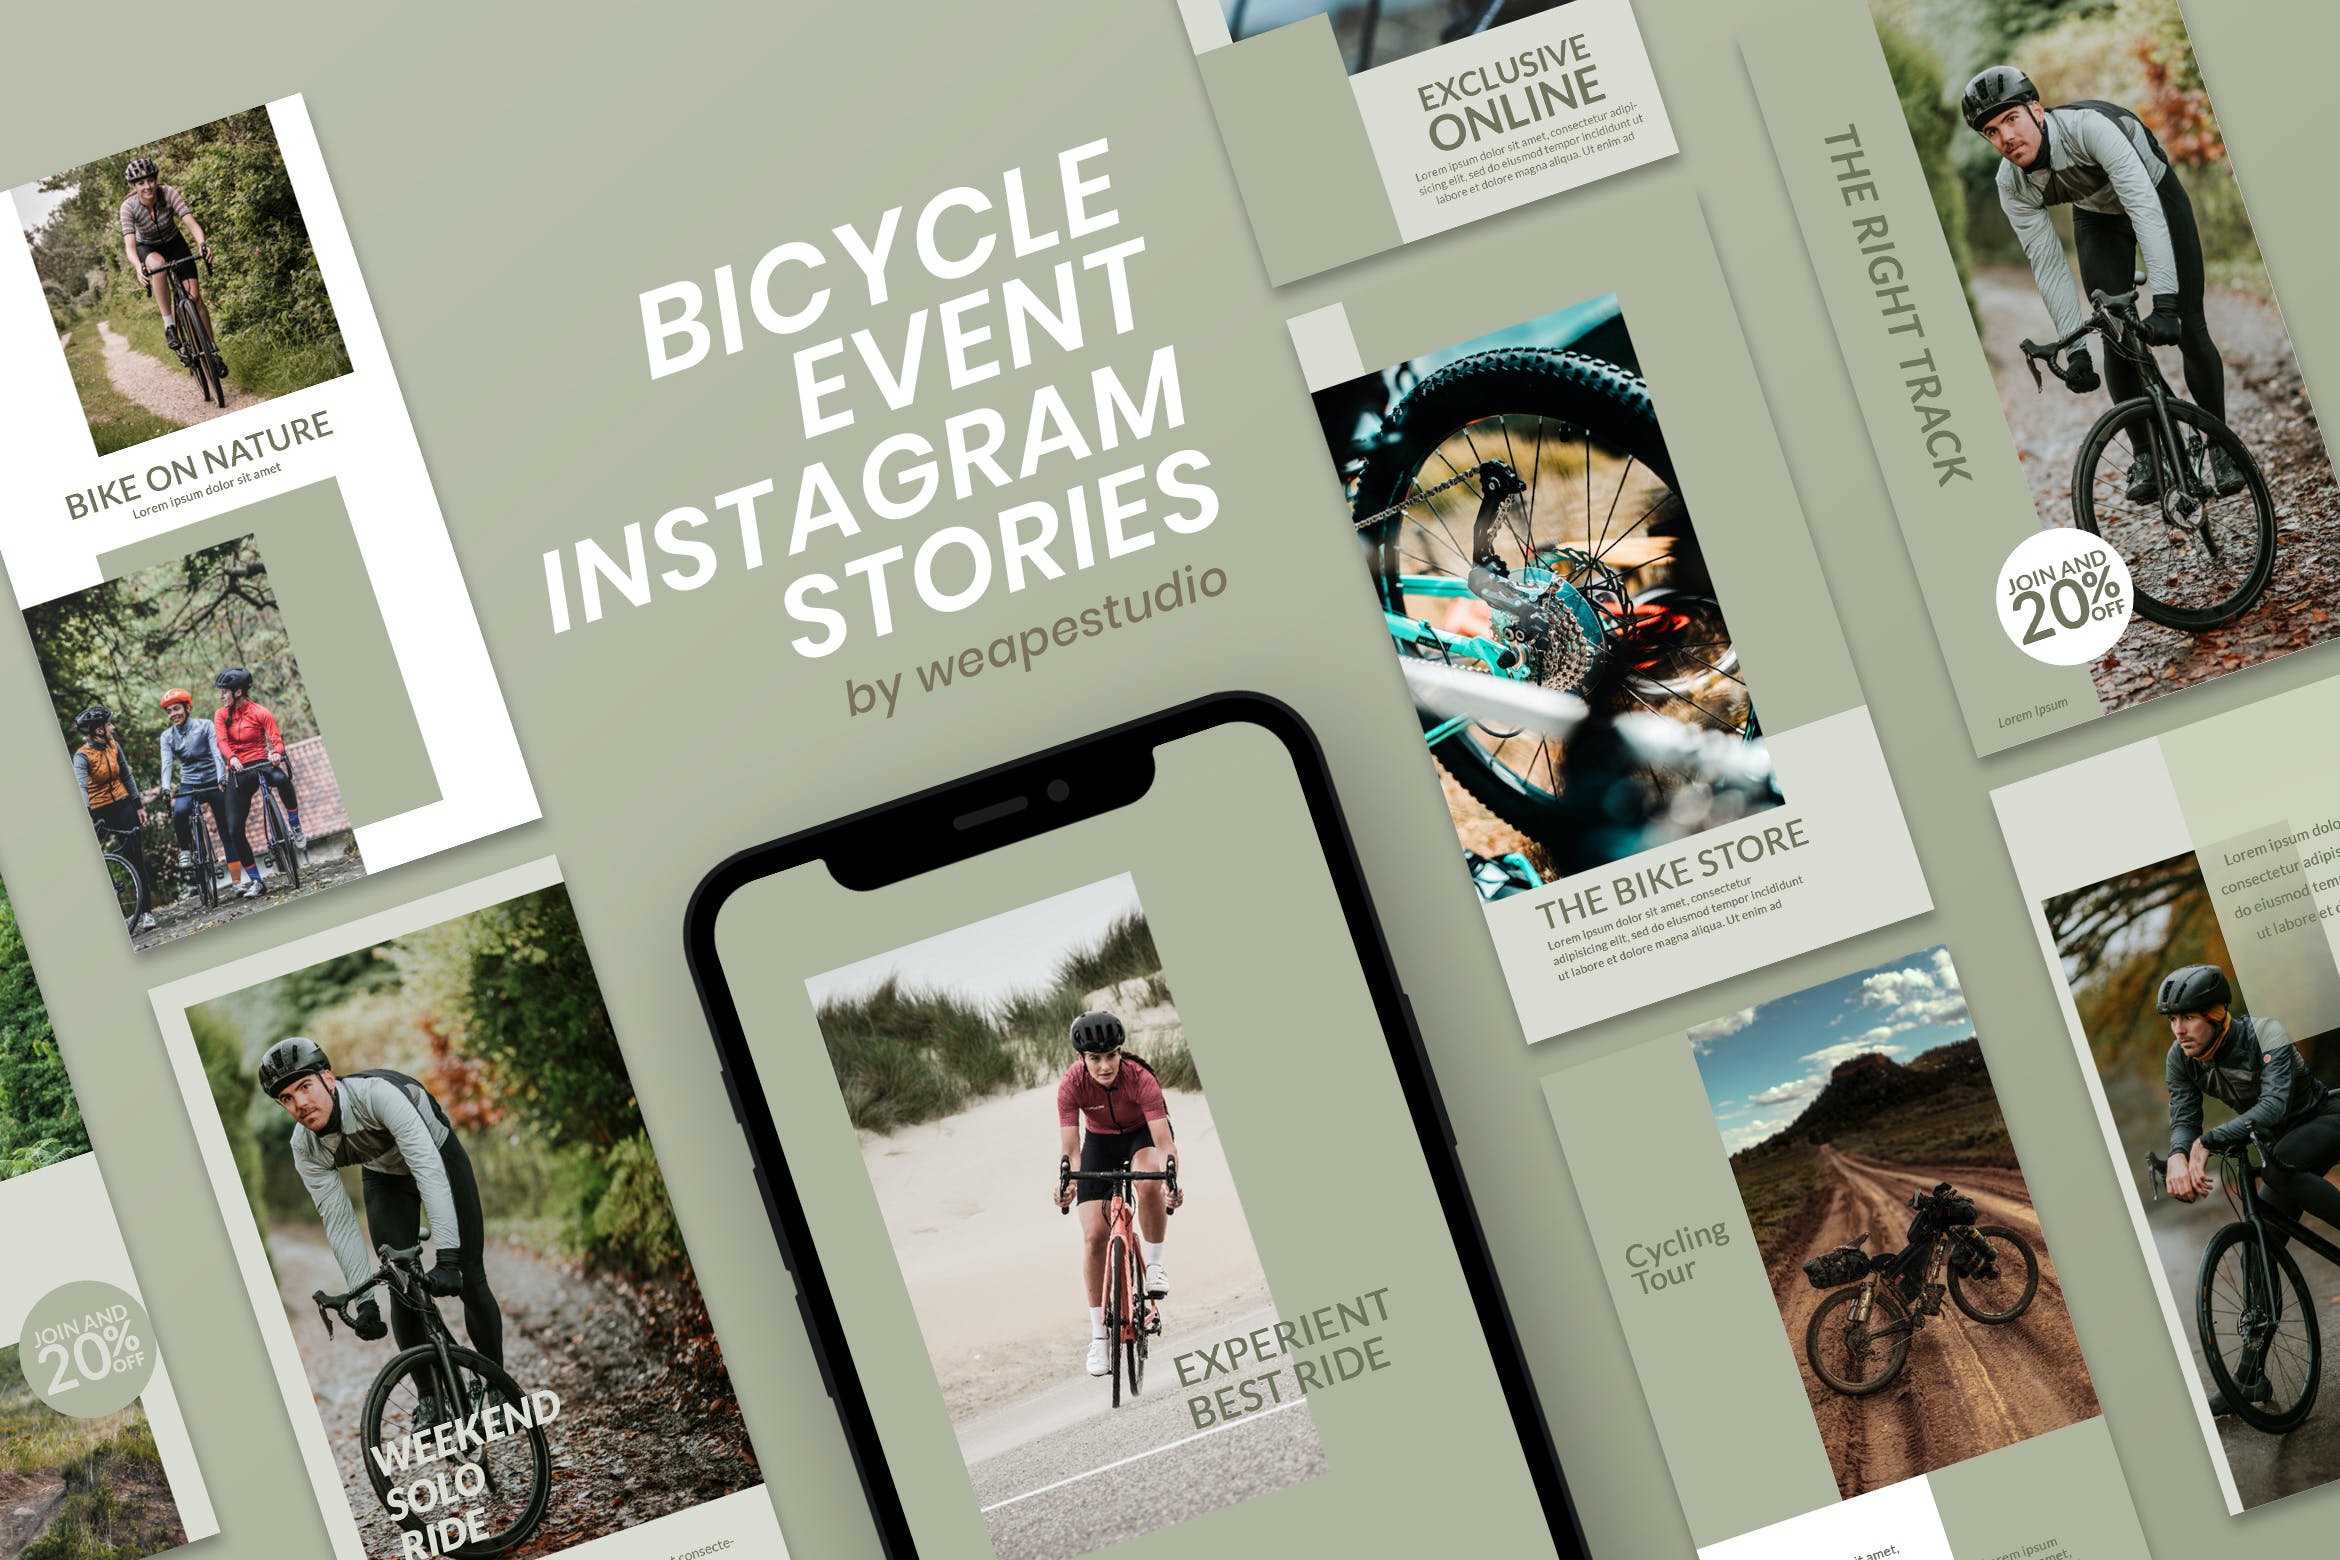 山地自行车赛车活动社交媒体宣传Instagram故事设计模板 Bicycle Event Instagram Stories设计素材模板